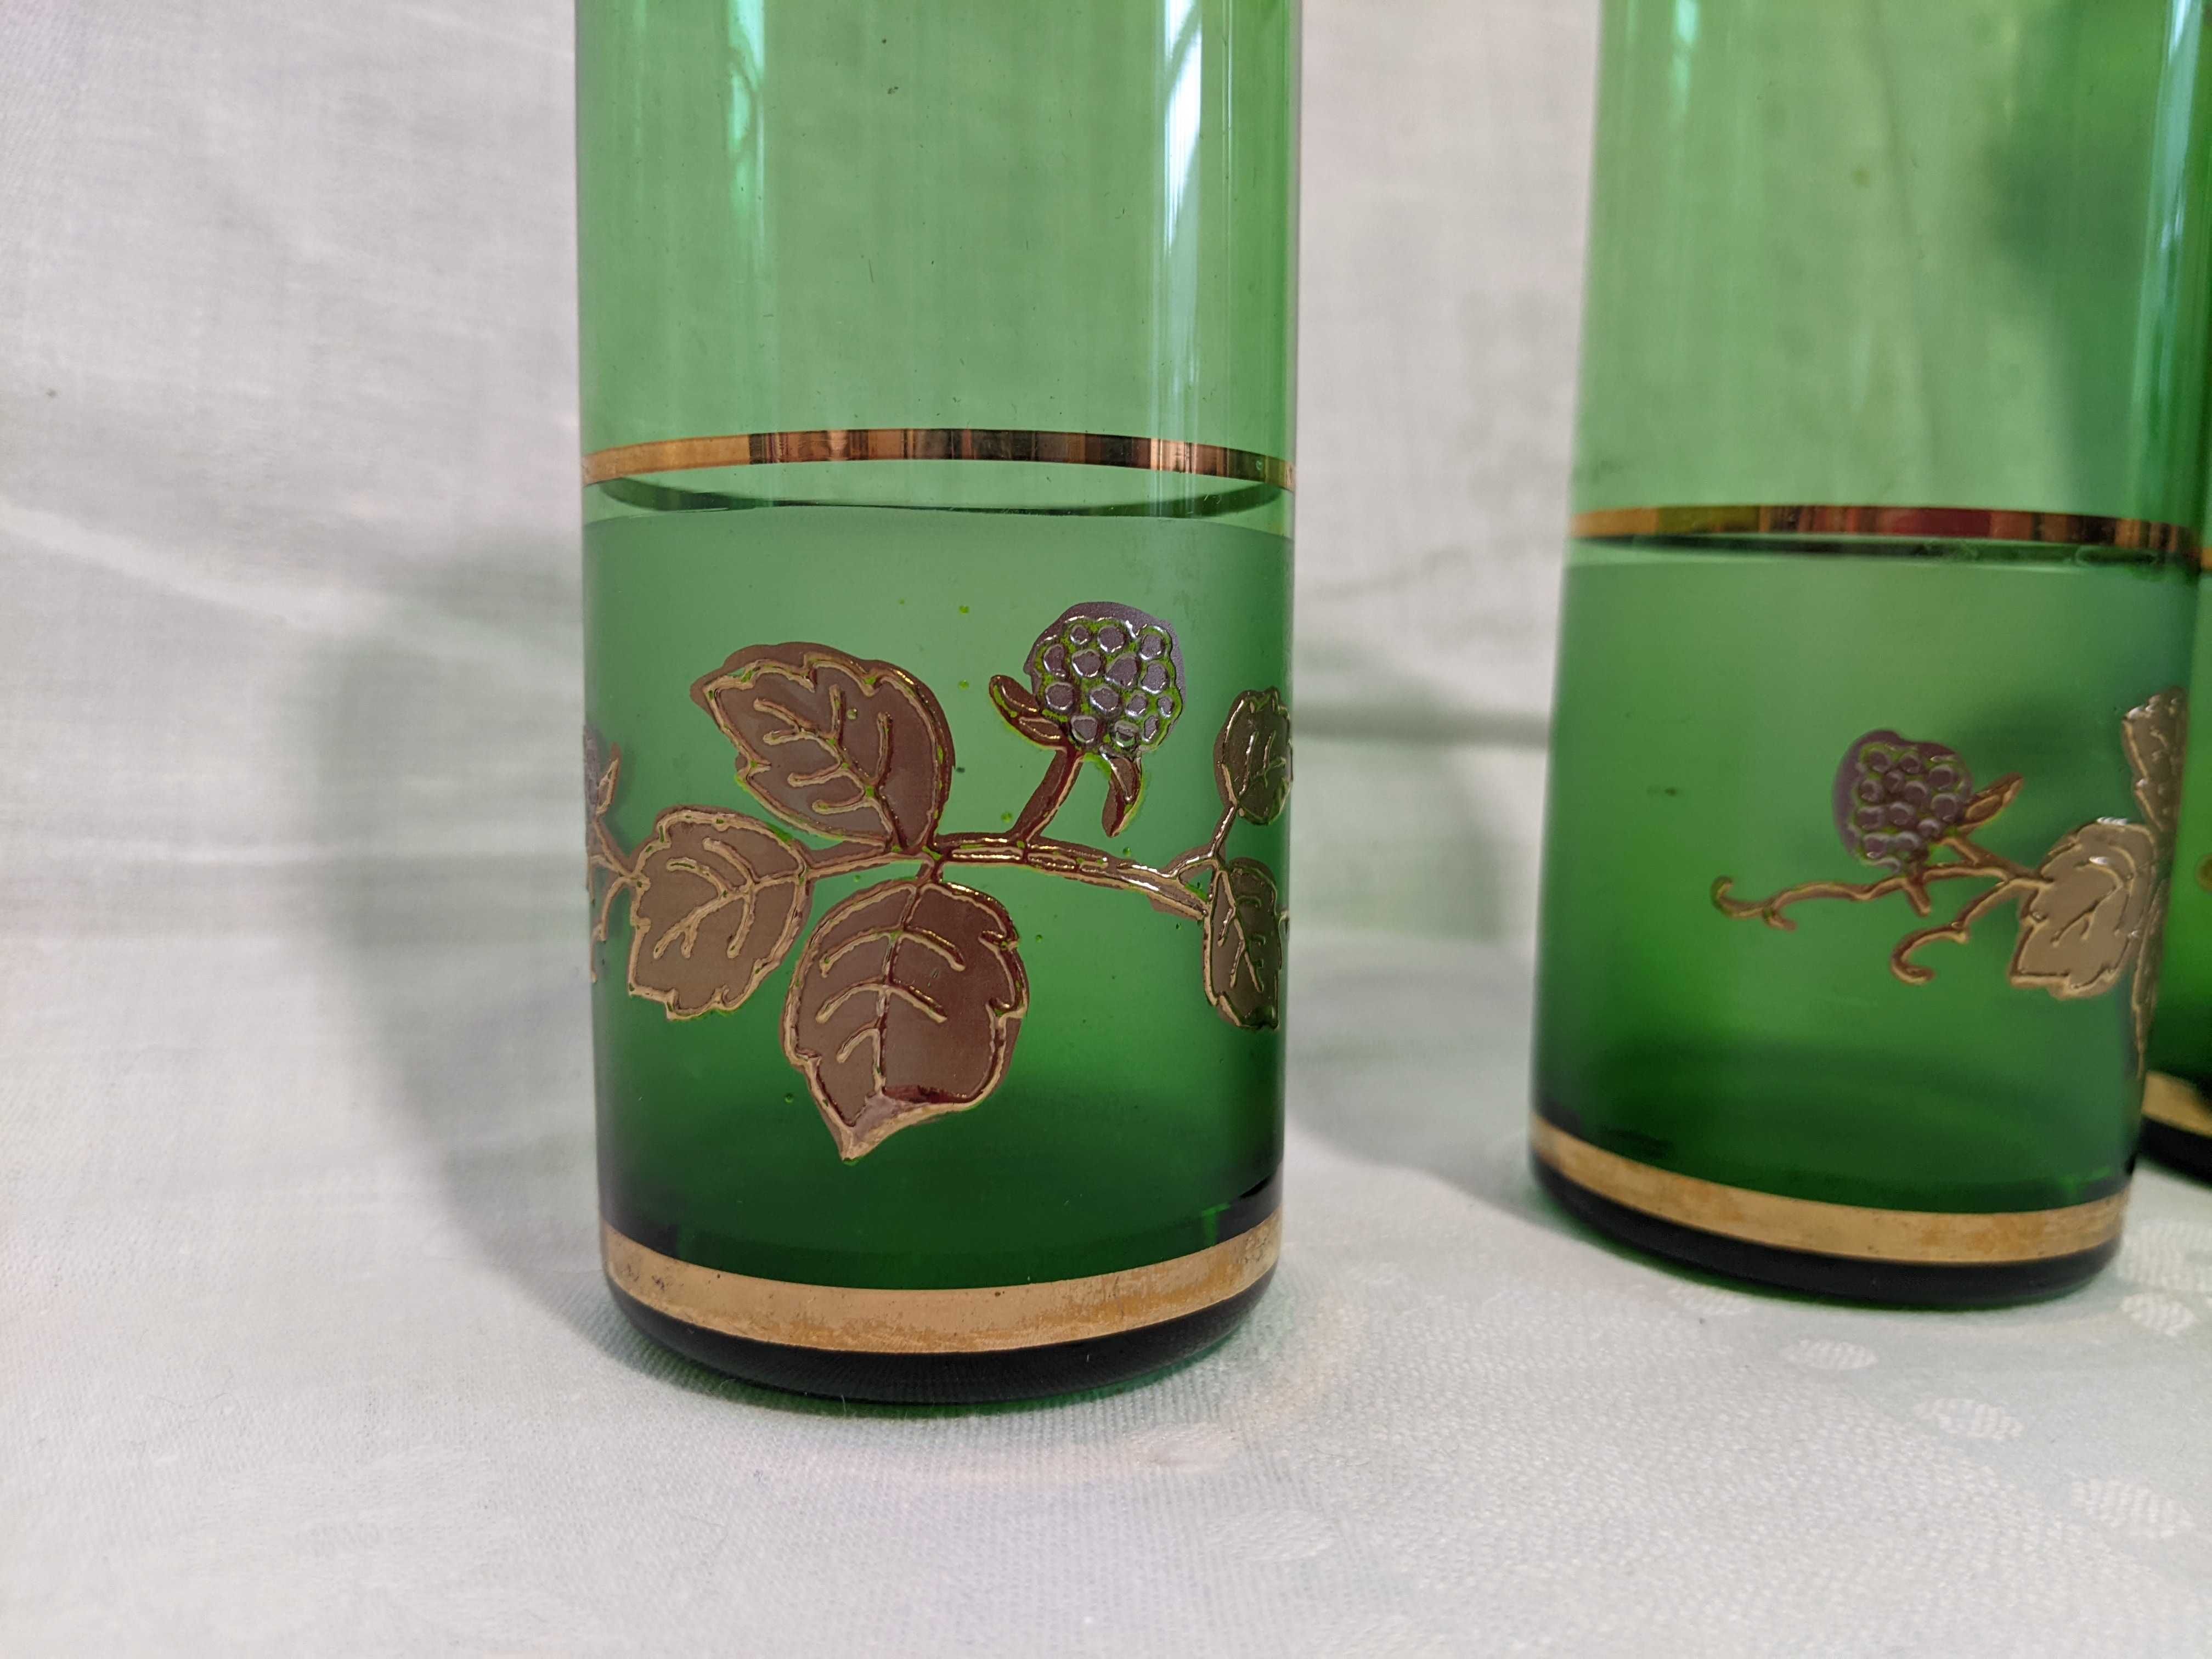 Кувшин из зеленого стекла и три стакана